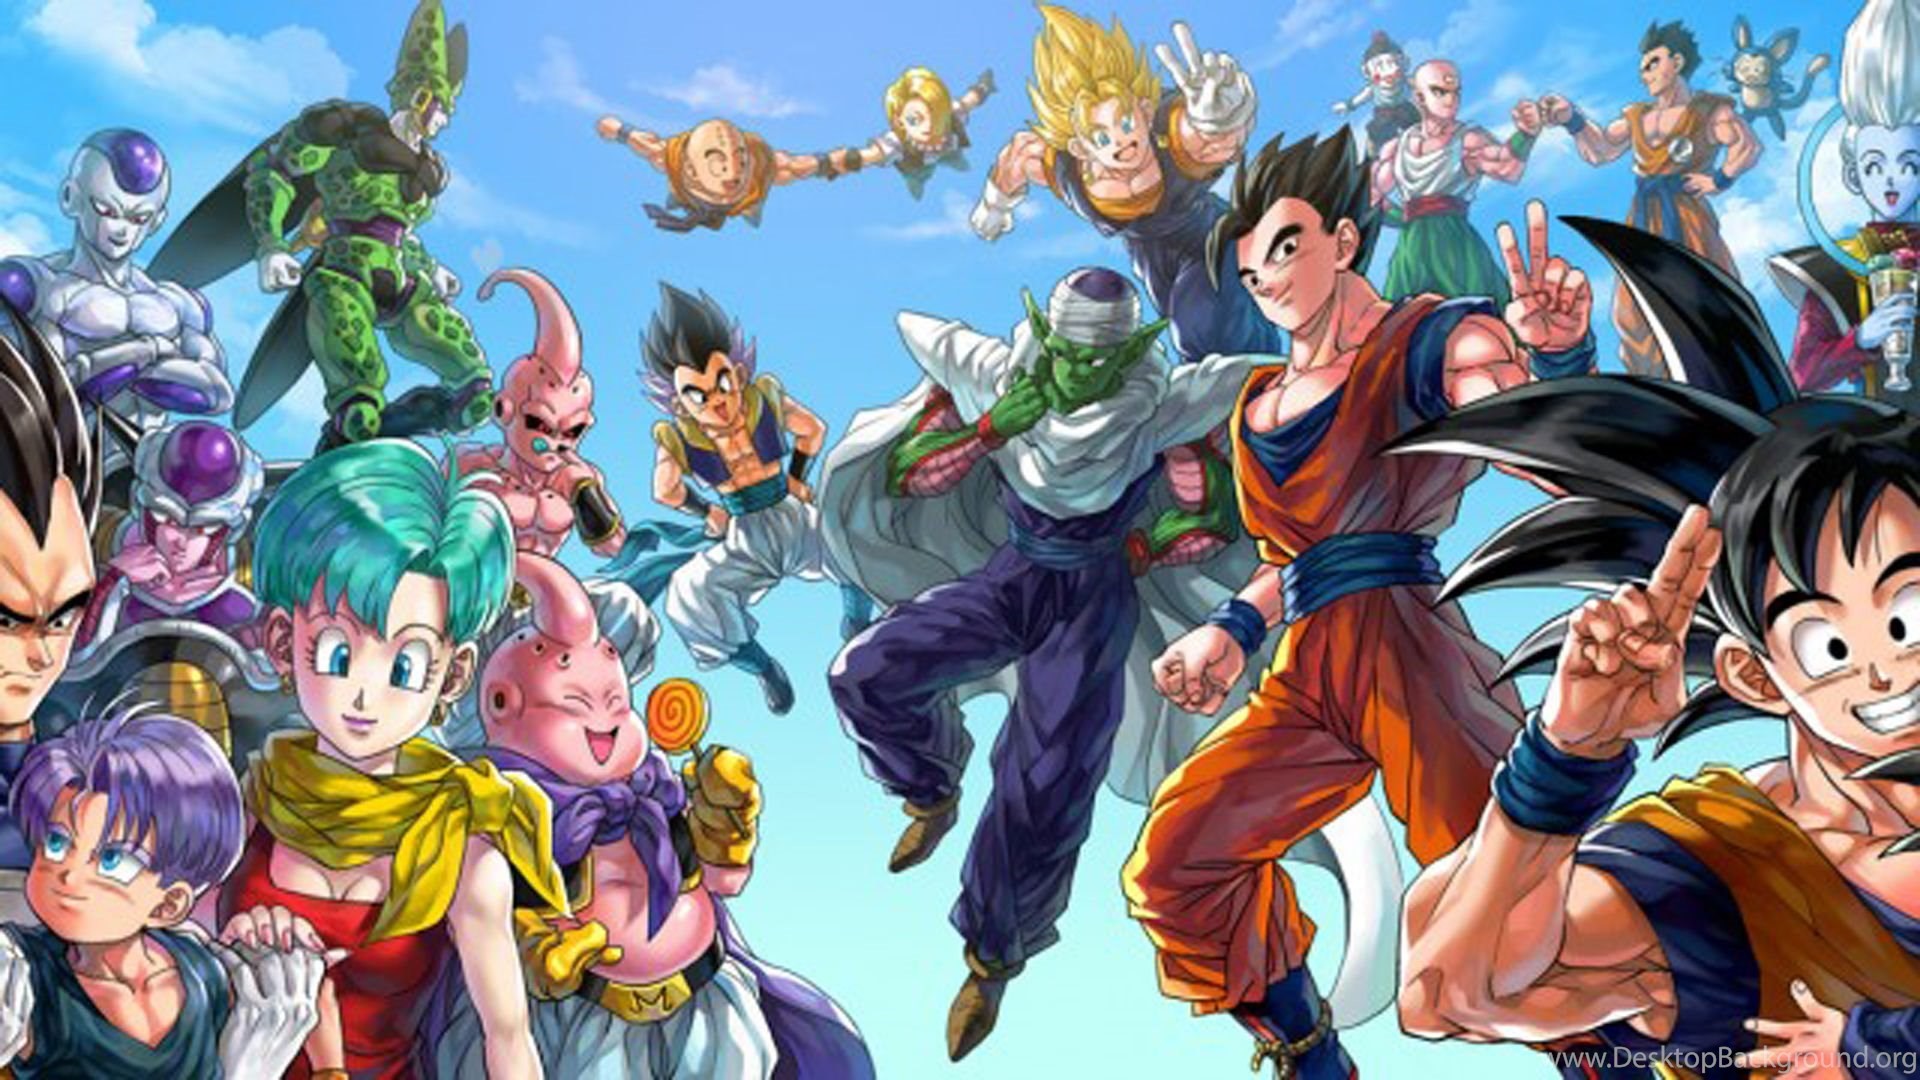 Dragon Ball Z Wallpaper Image